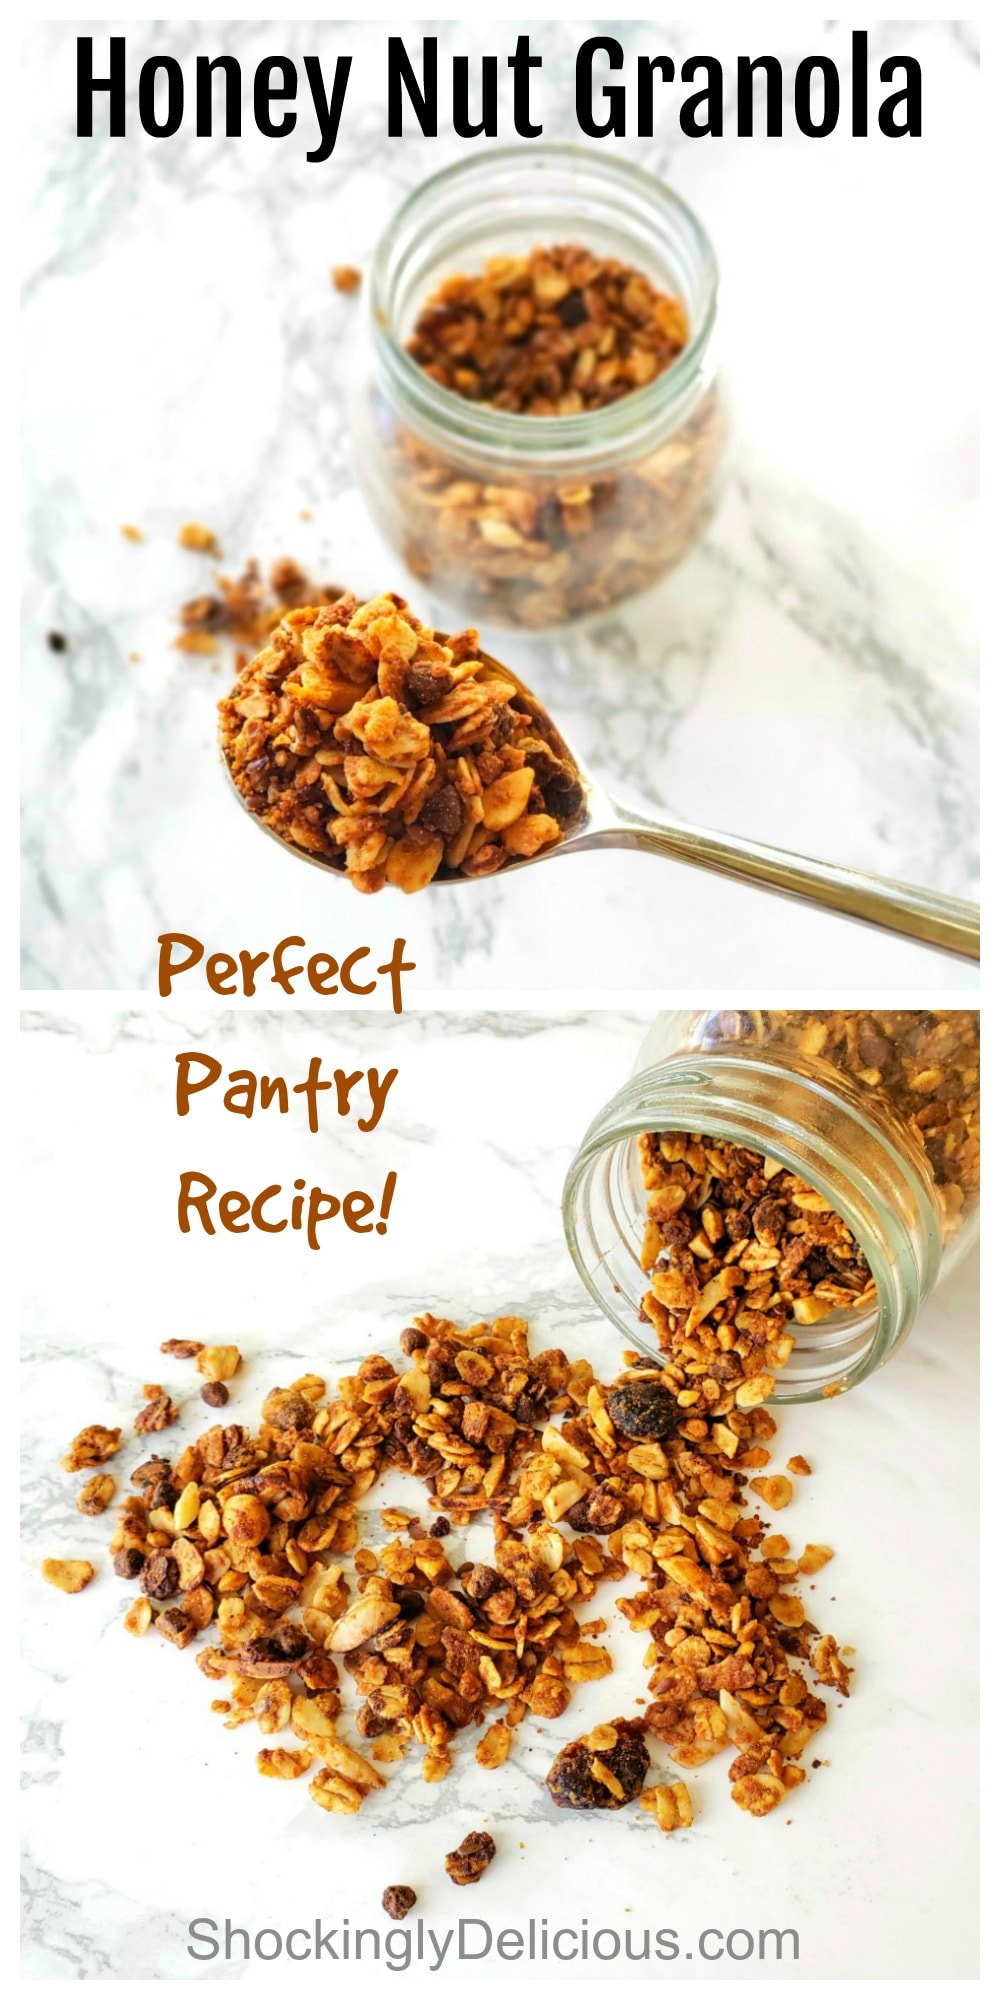 Honey Nut Granola Recipe photo collage on ShockinglyDelicious.com